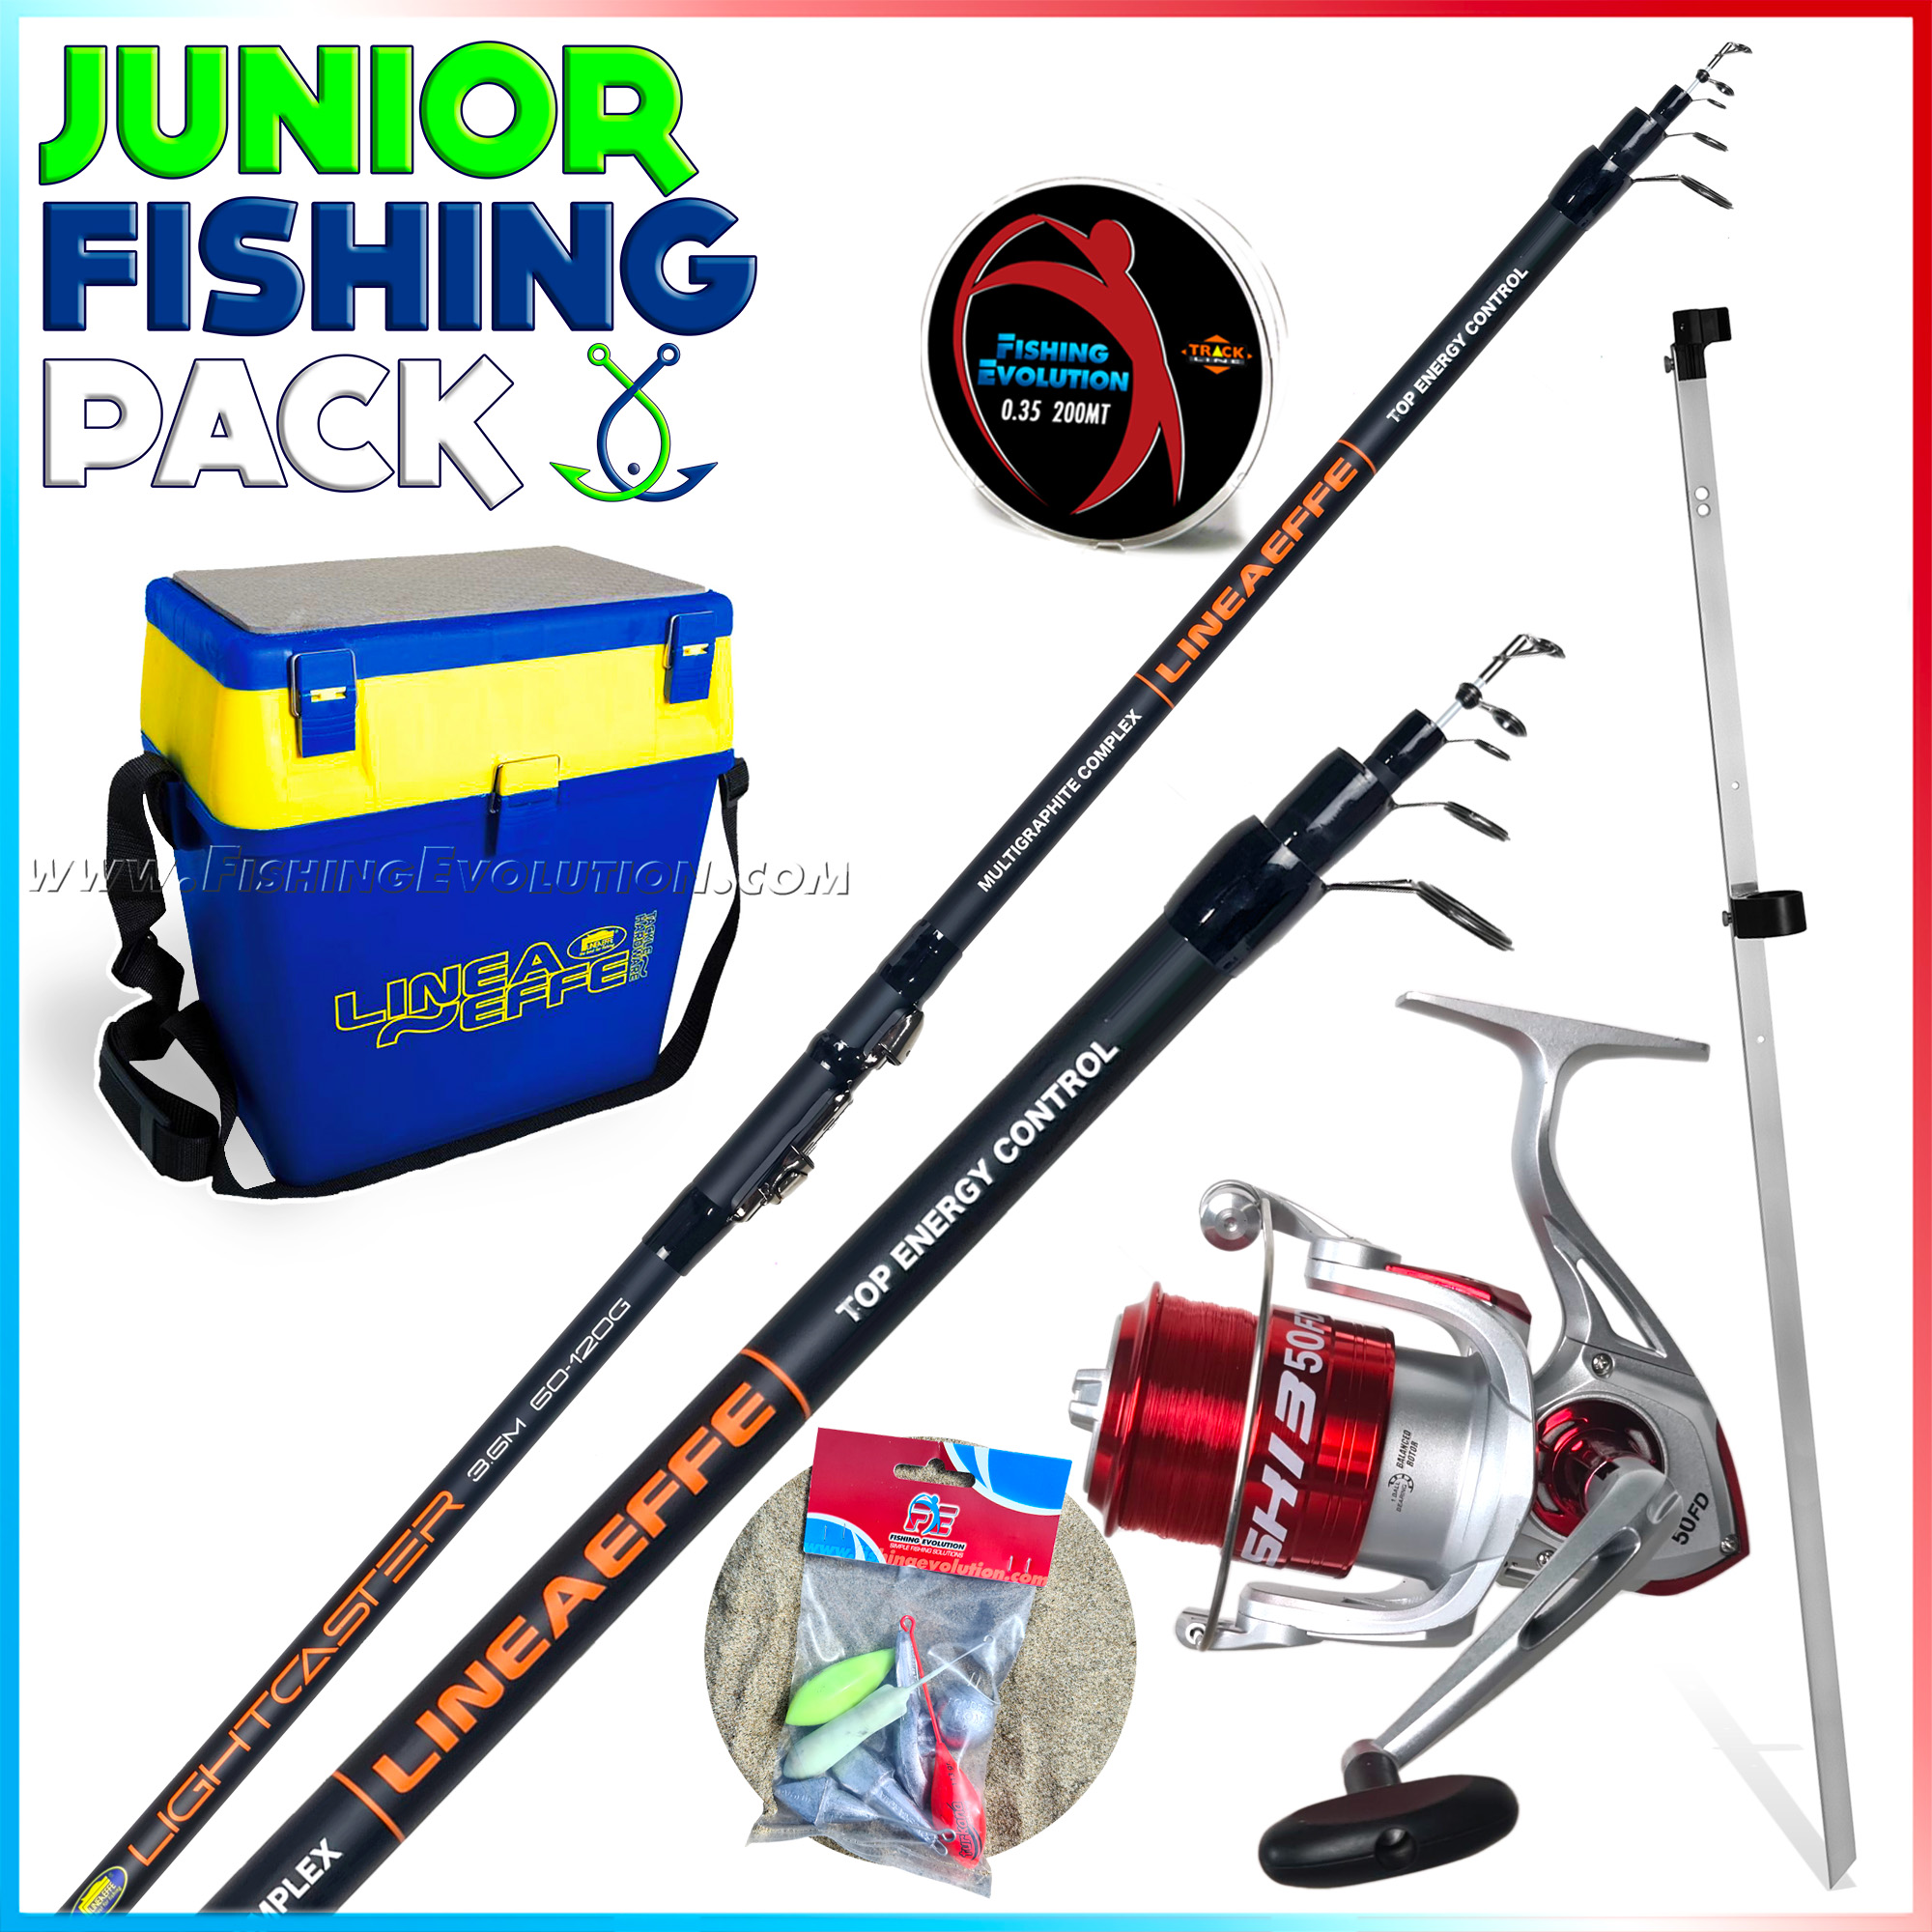 Junior Fishing Pack